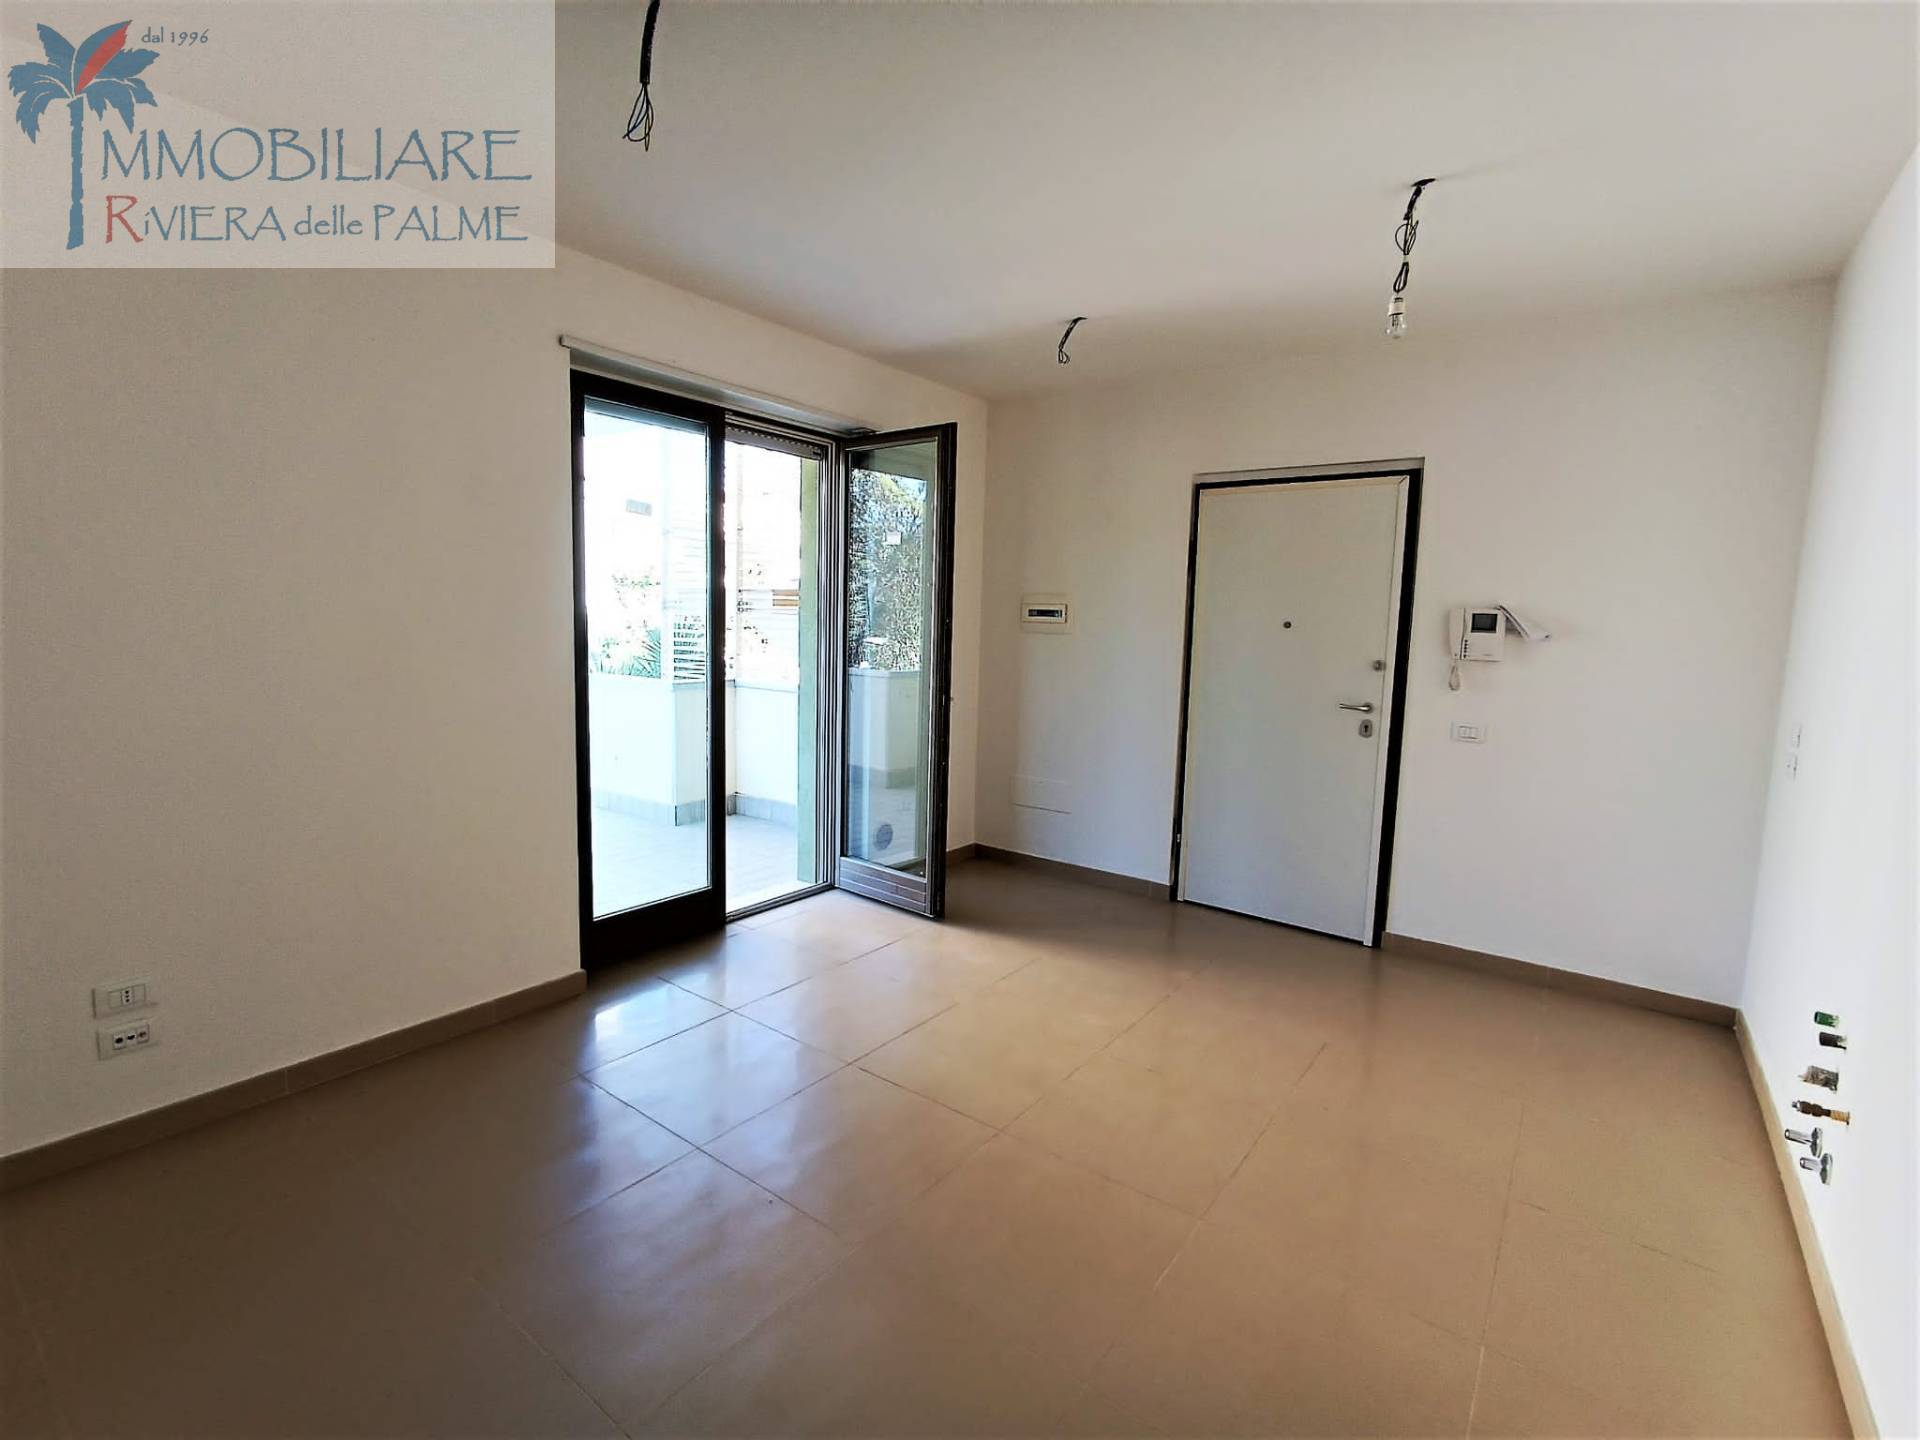 Appartamento in vendita a Grottammare, 2 locali, prezzo € 115.000 | PortaleAgenzieImmobiliari.it